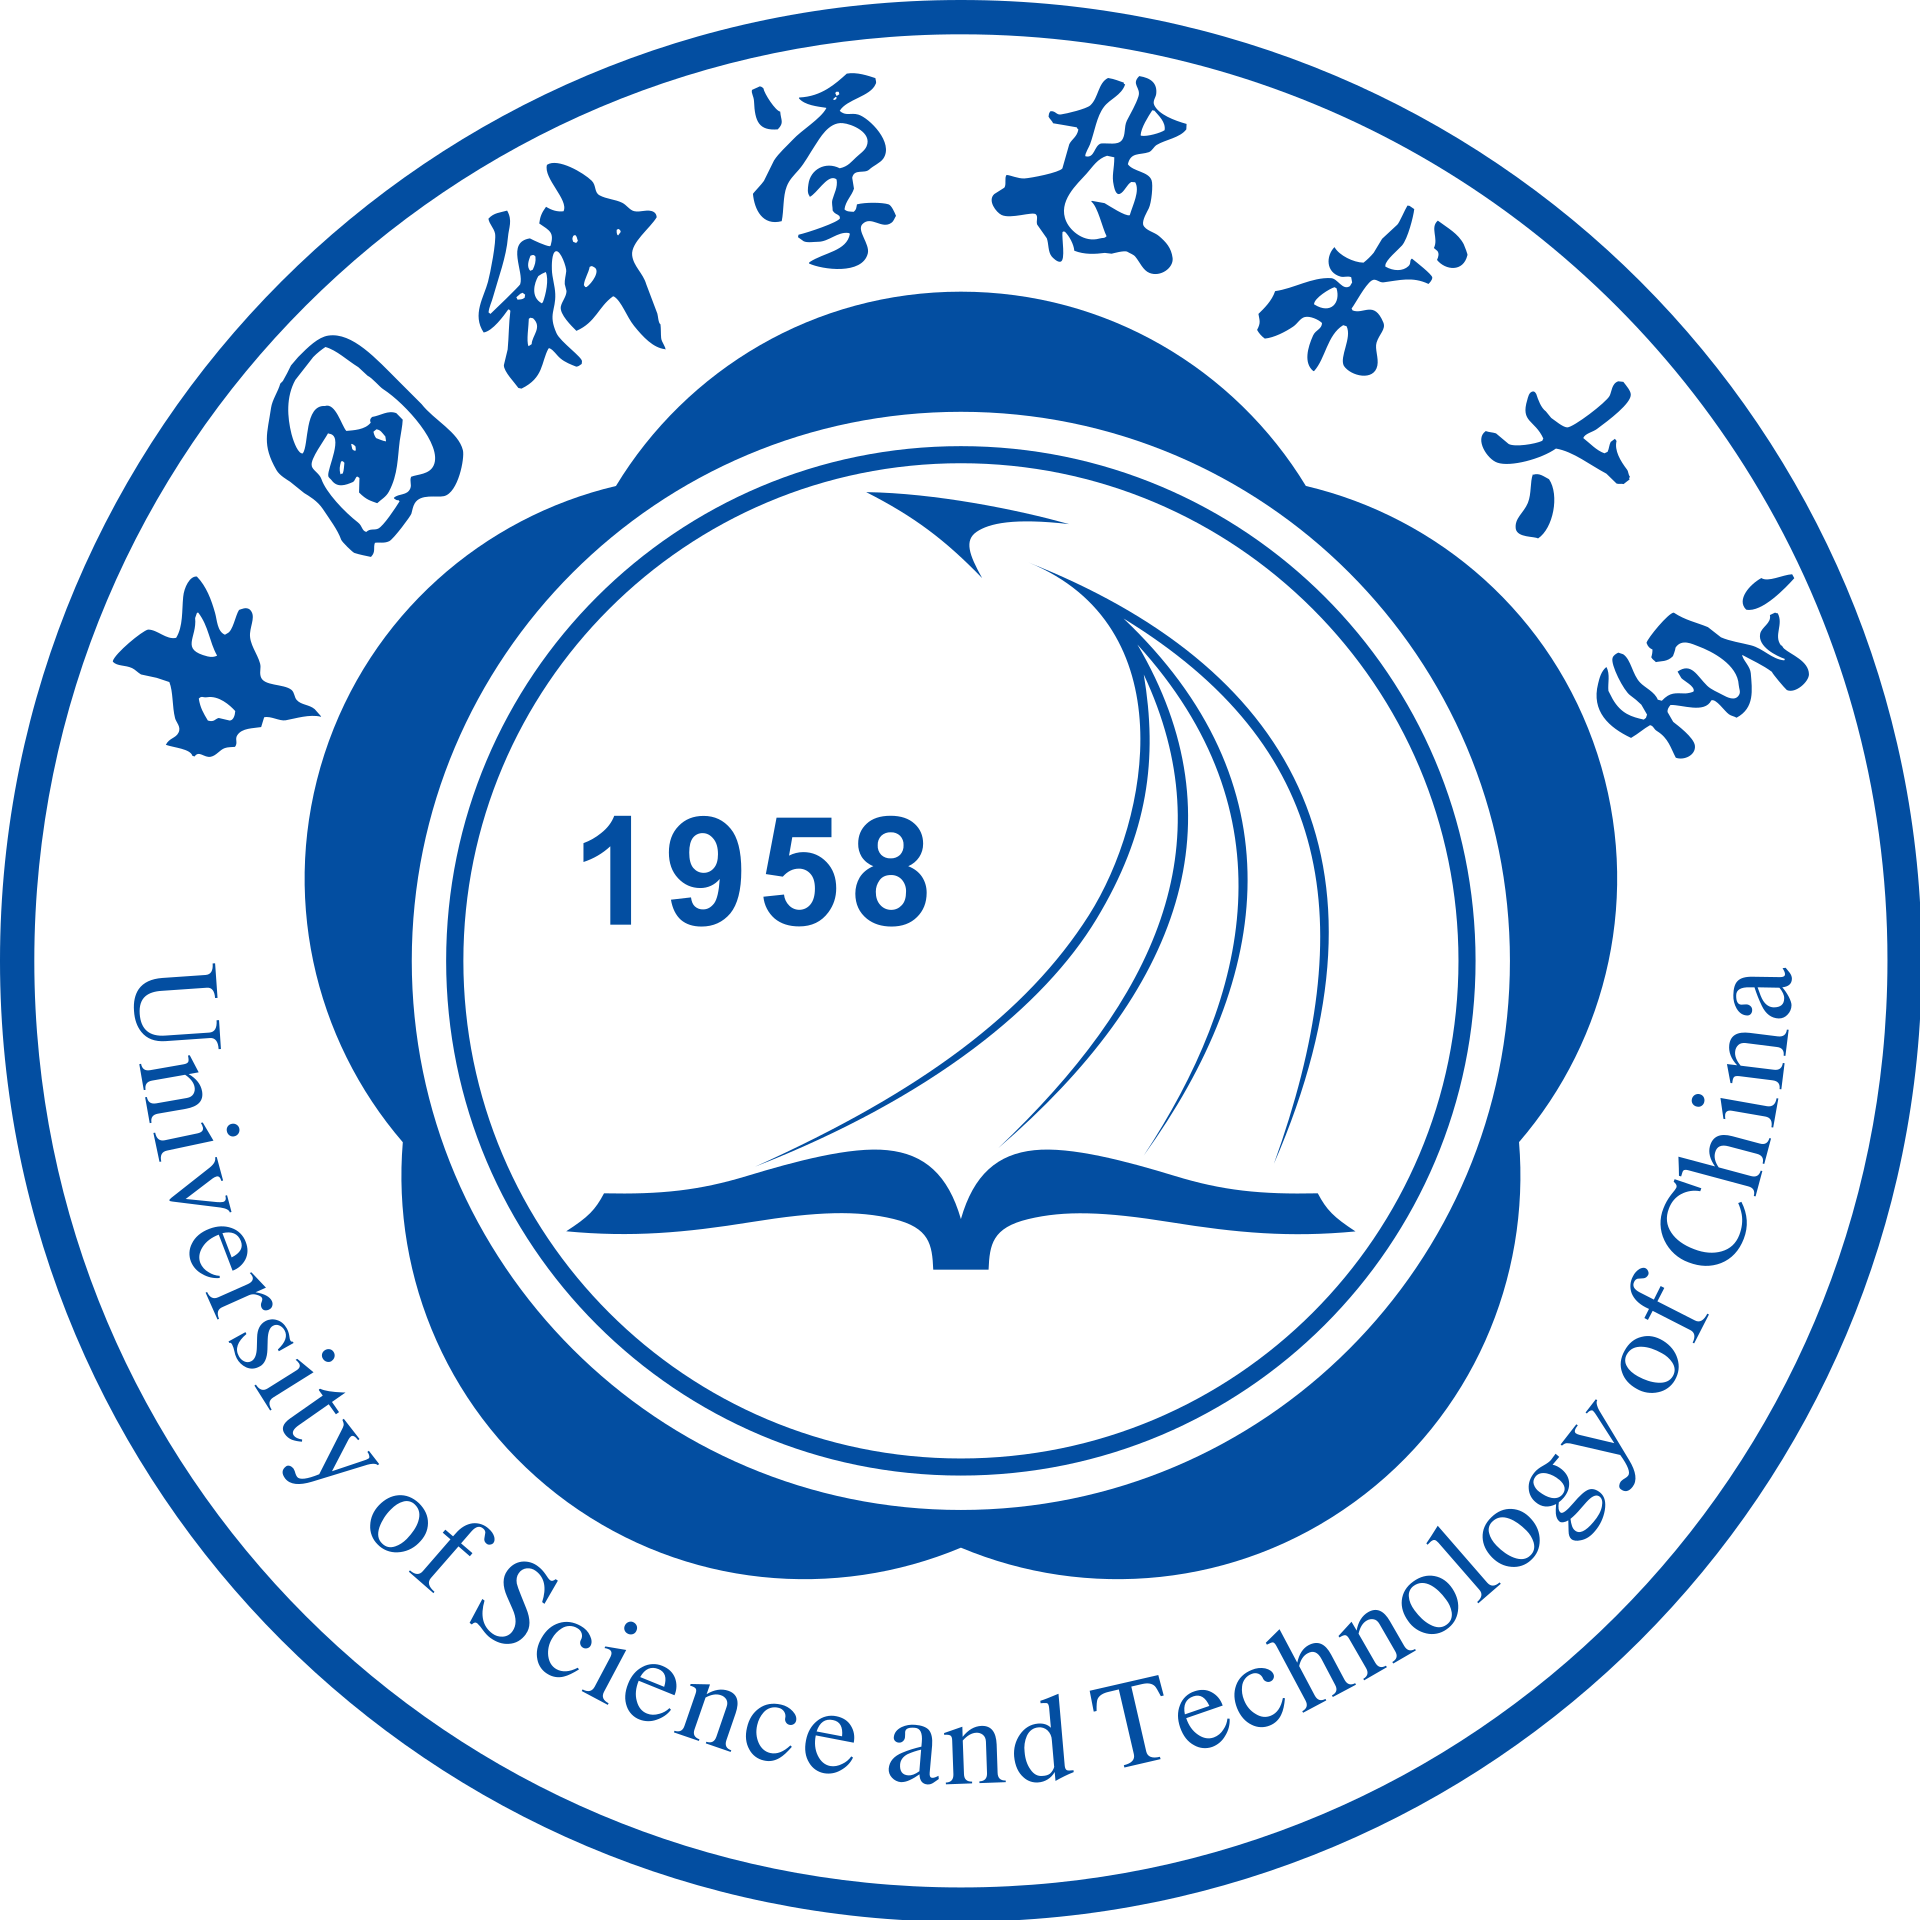 Hiina teaduse ja tehnoloogia ülikool – Erudera